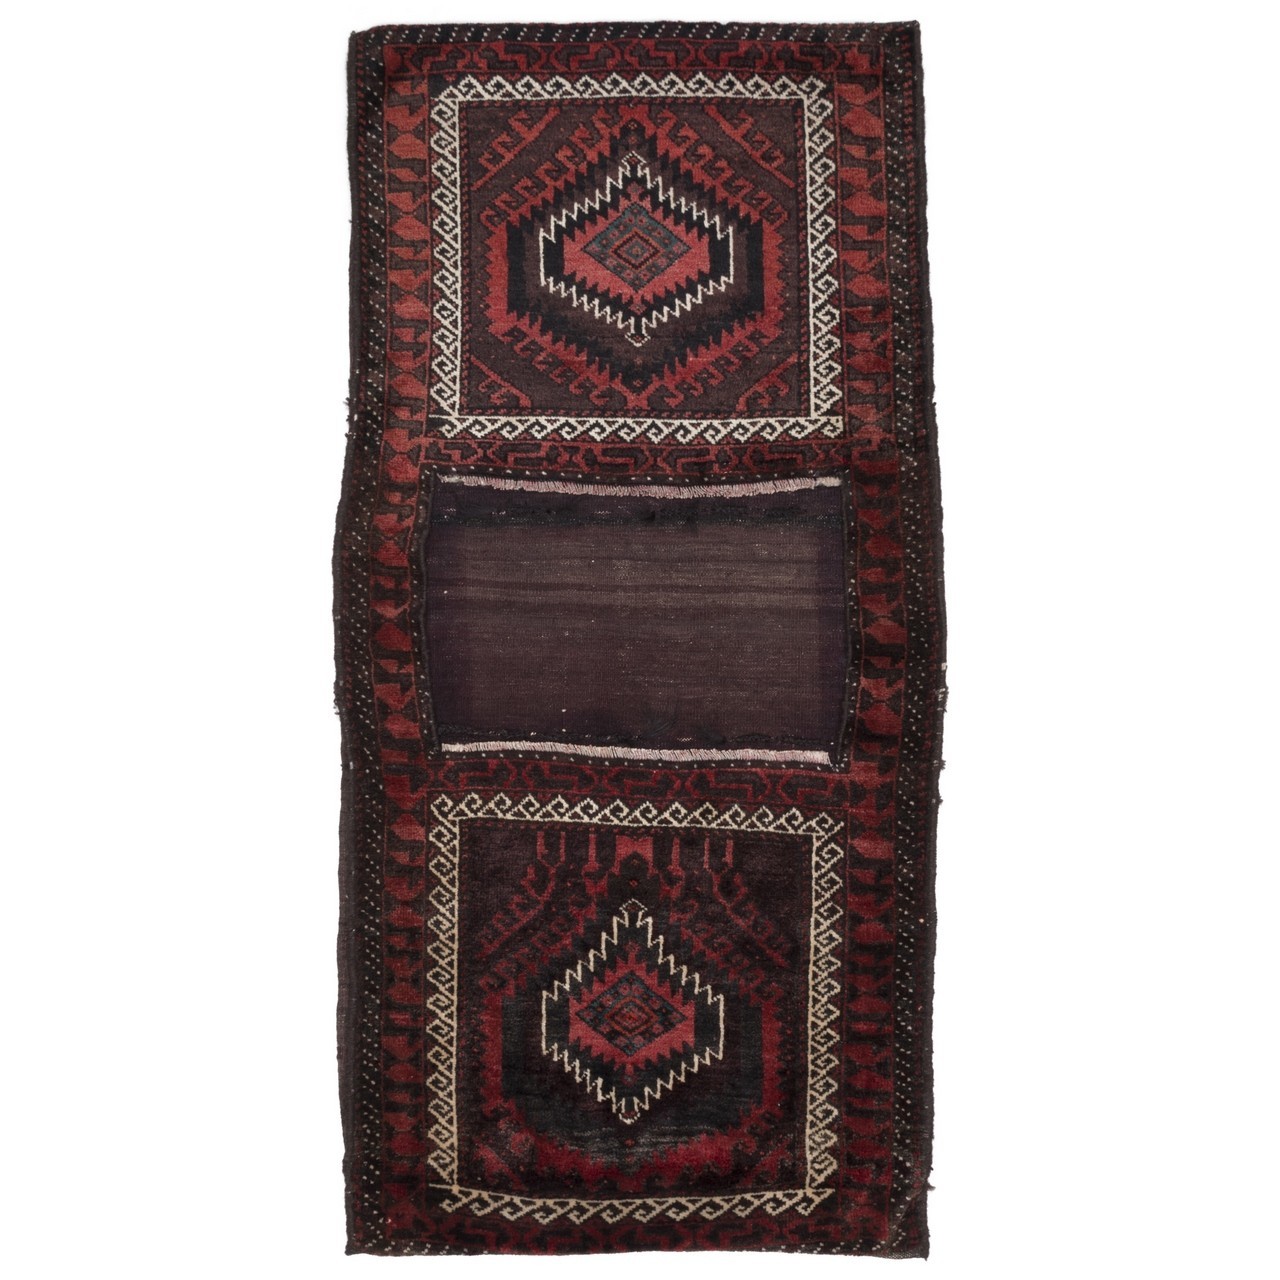 Satteltasche handgeknüpfter persischer Teppich. Ziffer 169014